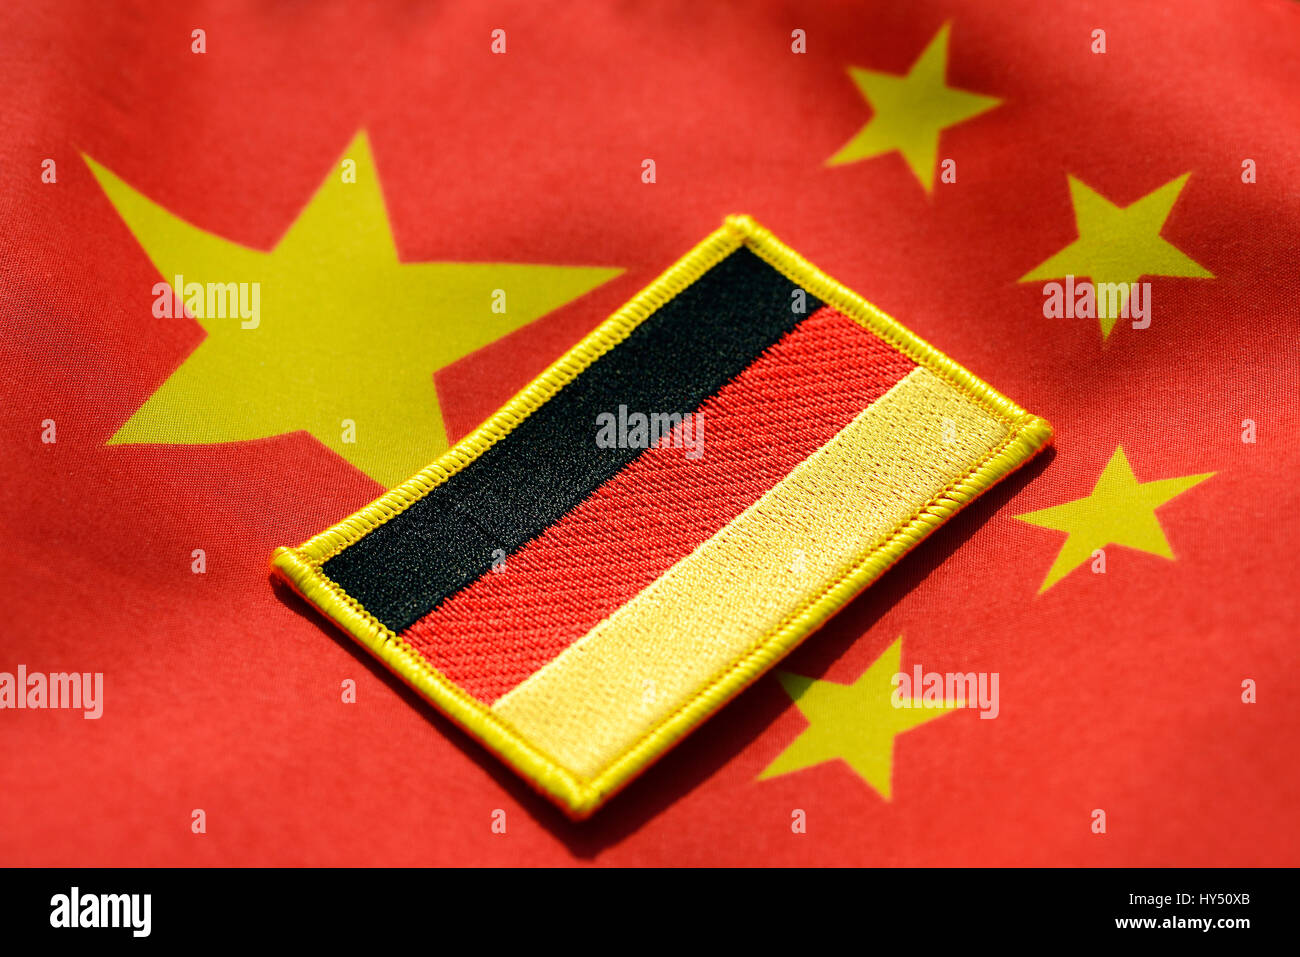 Drapeau Allemagne drapeau sur la Chine, les relations économiques entre l'Allemagne et la Chine, Deutschlandfahne China-Fahne Wirtschaftsbeziehungen auf, zwischen Deuts Banque D'Images